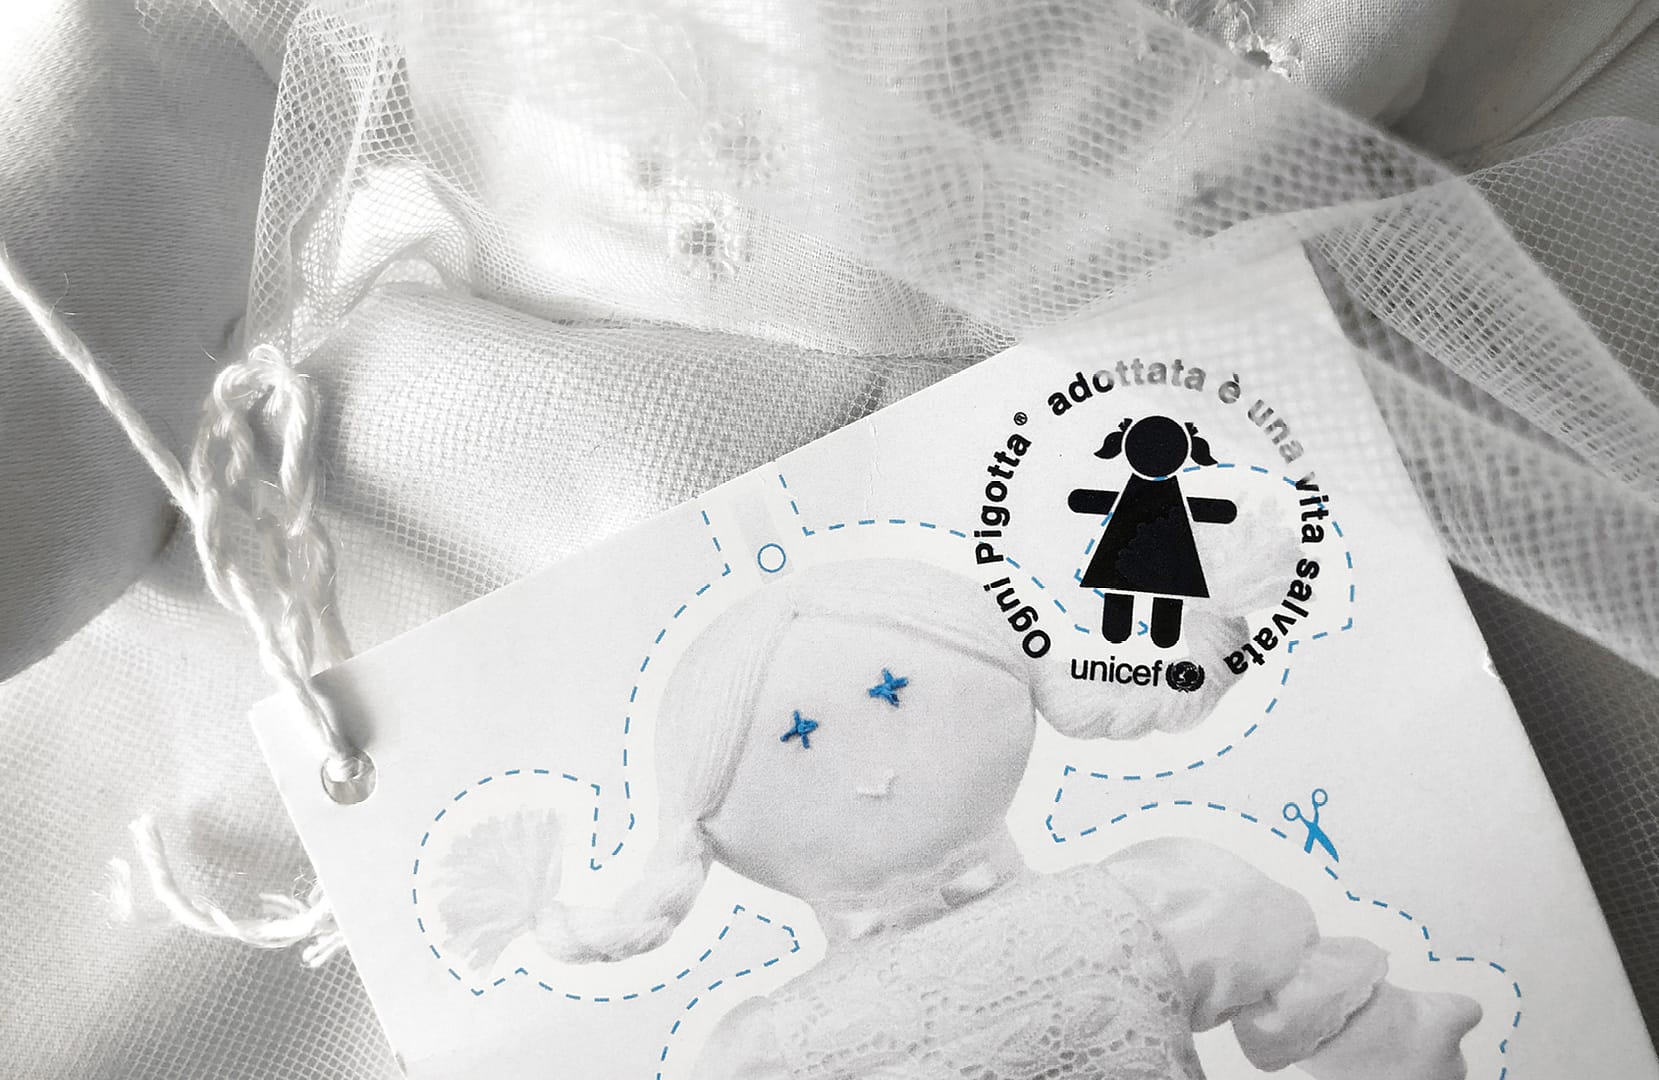 White Pigotta, progettata in collaborazione con UNICEF, è simbolo di innocenza e purezza